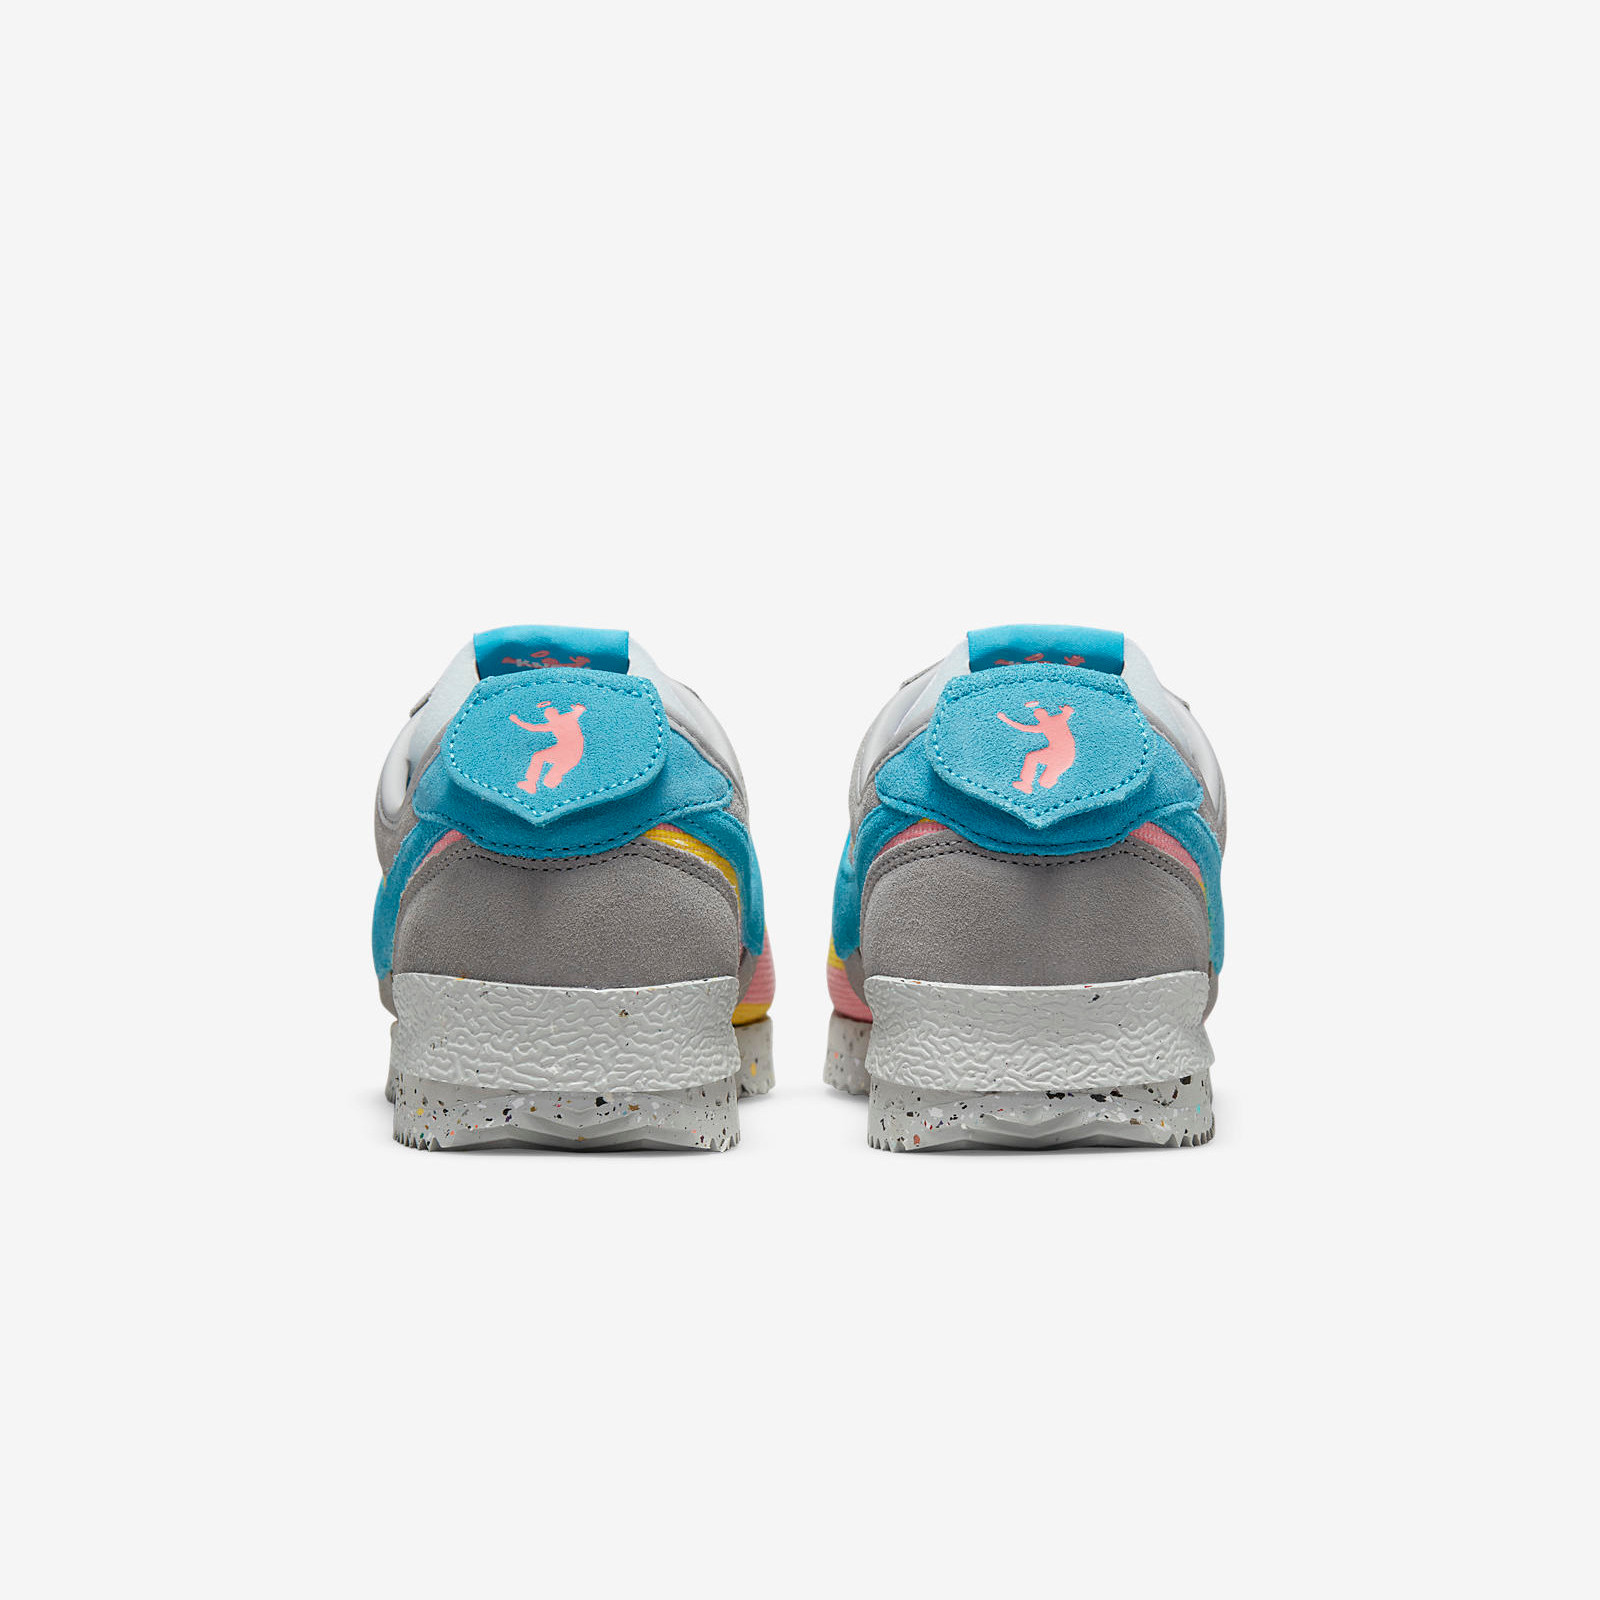 Union x Nike Cortez
Light Smoke Grey